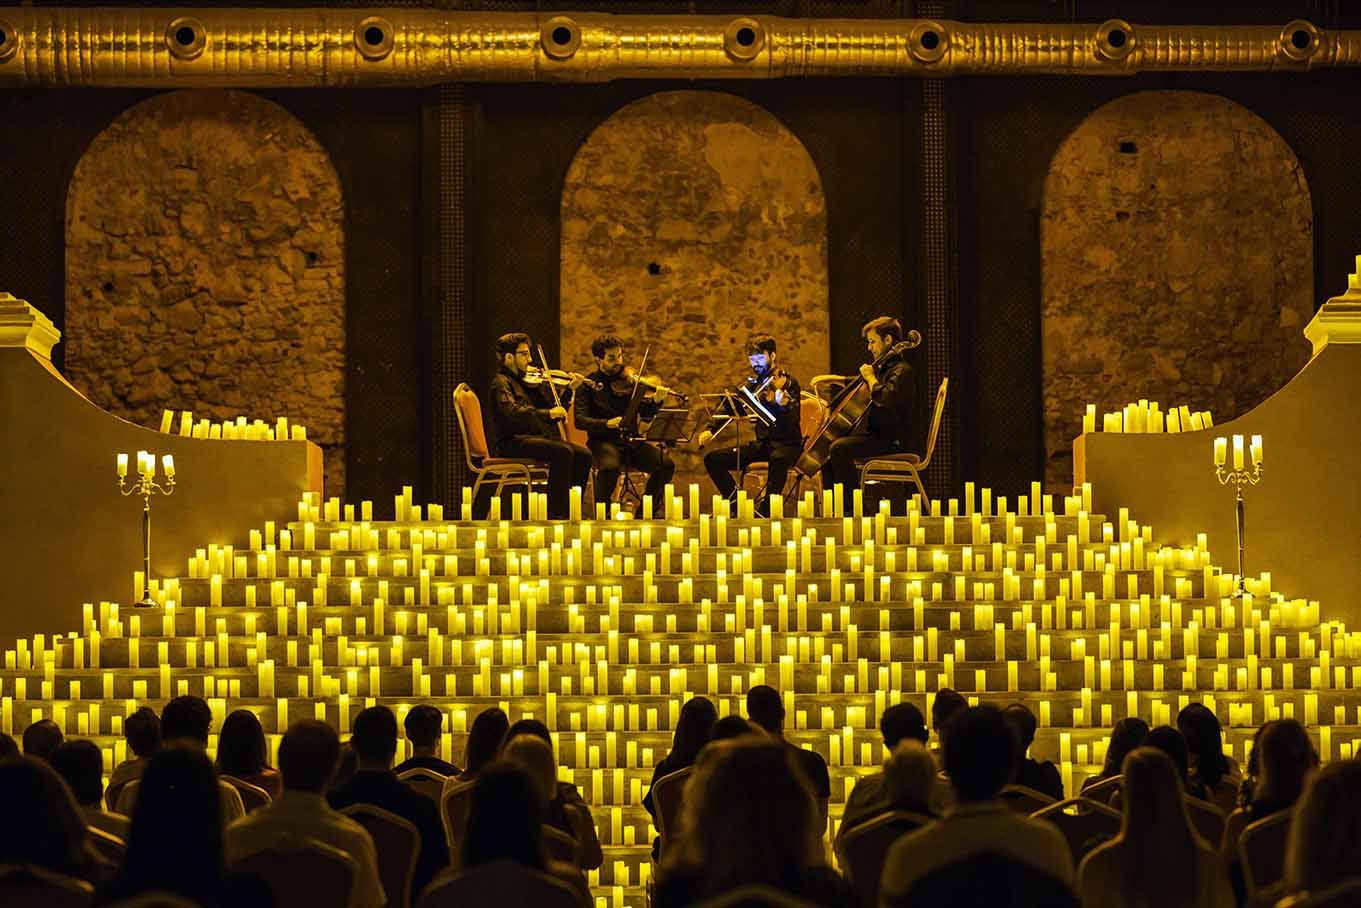 Apresentações internacionais de concertos à luz de velas chegam a Campinas